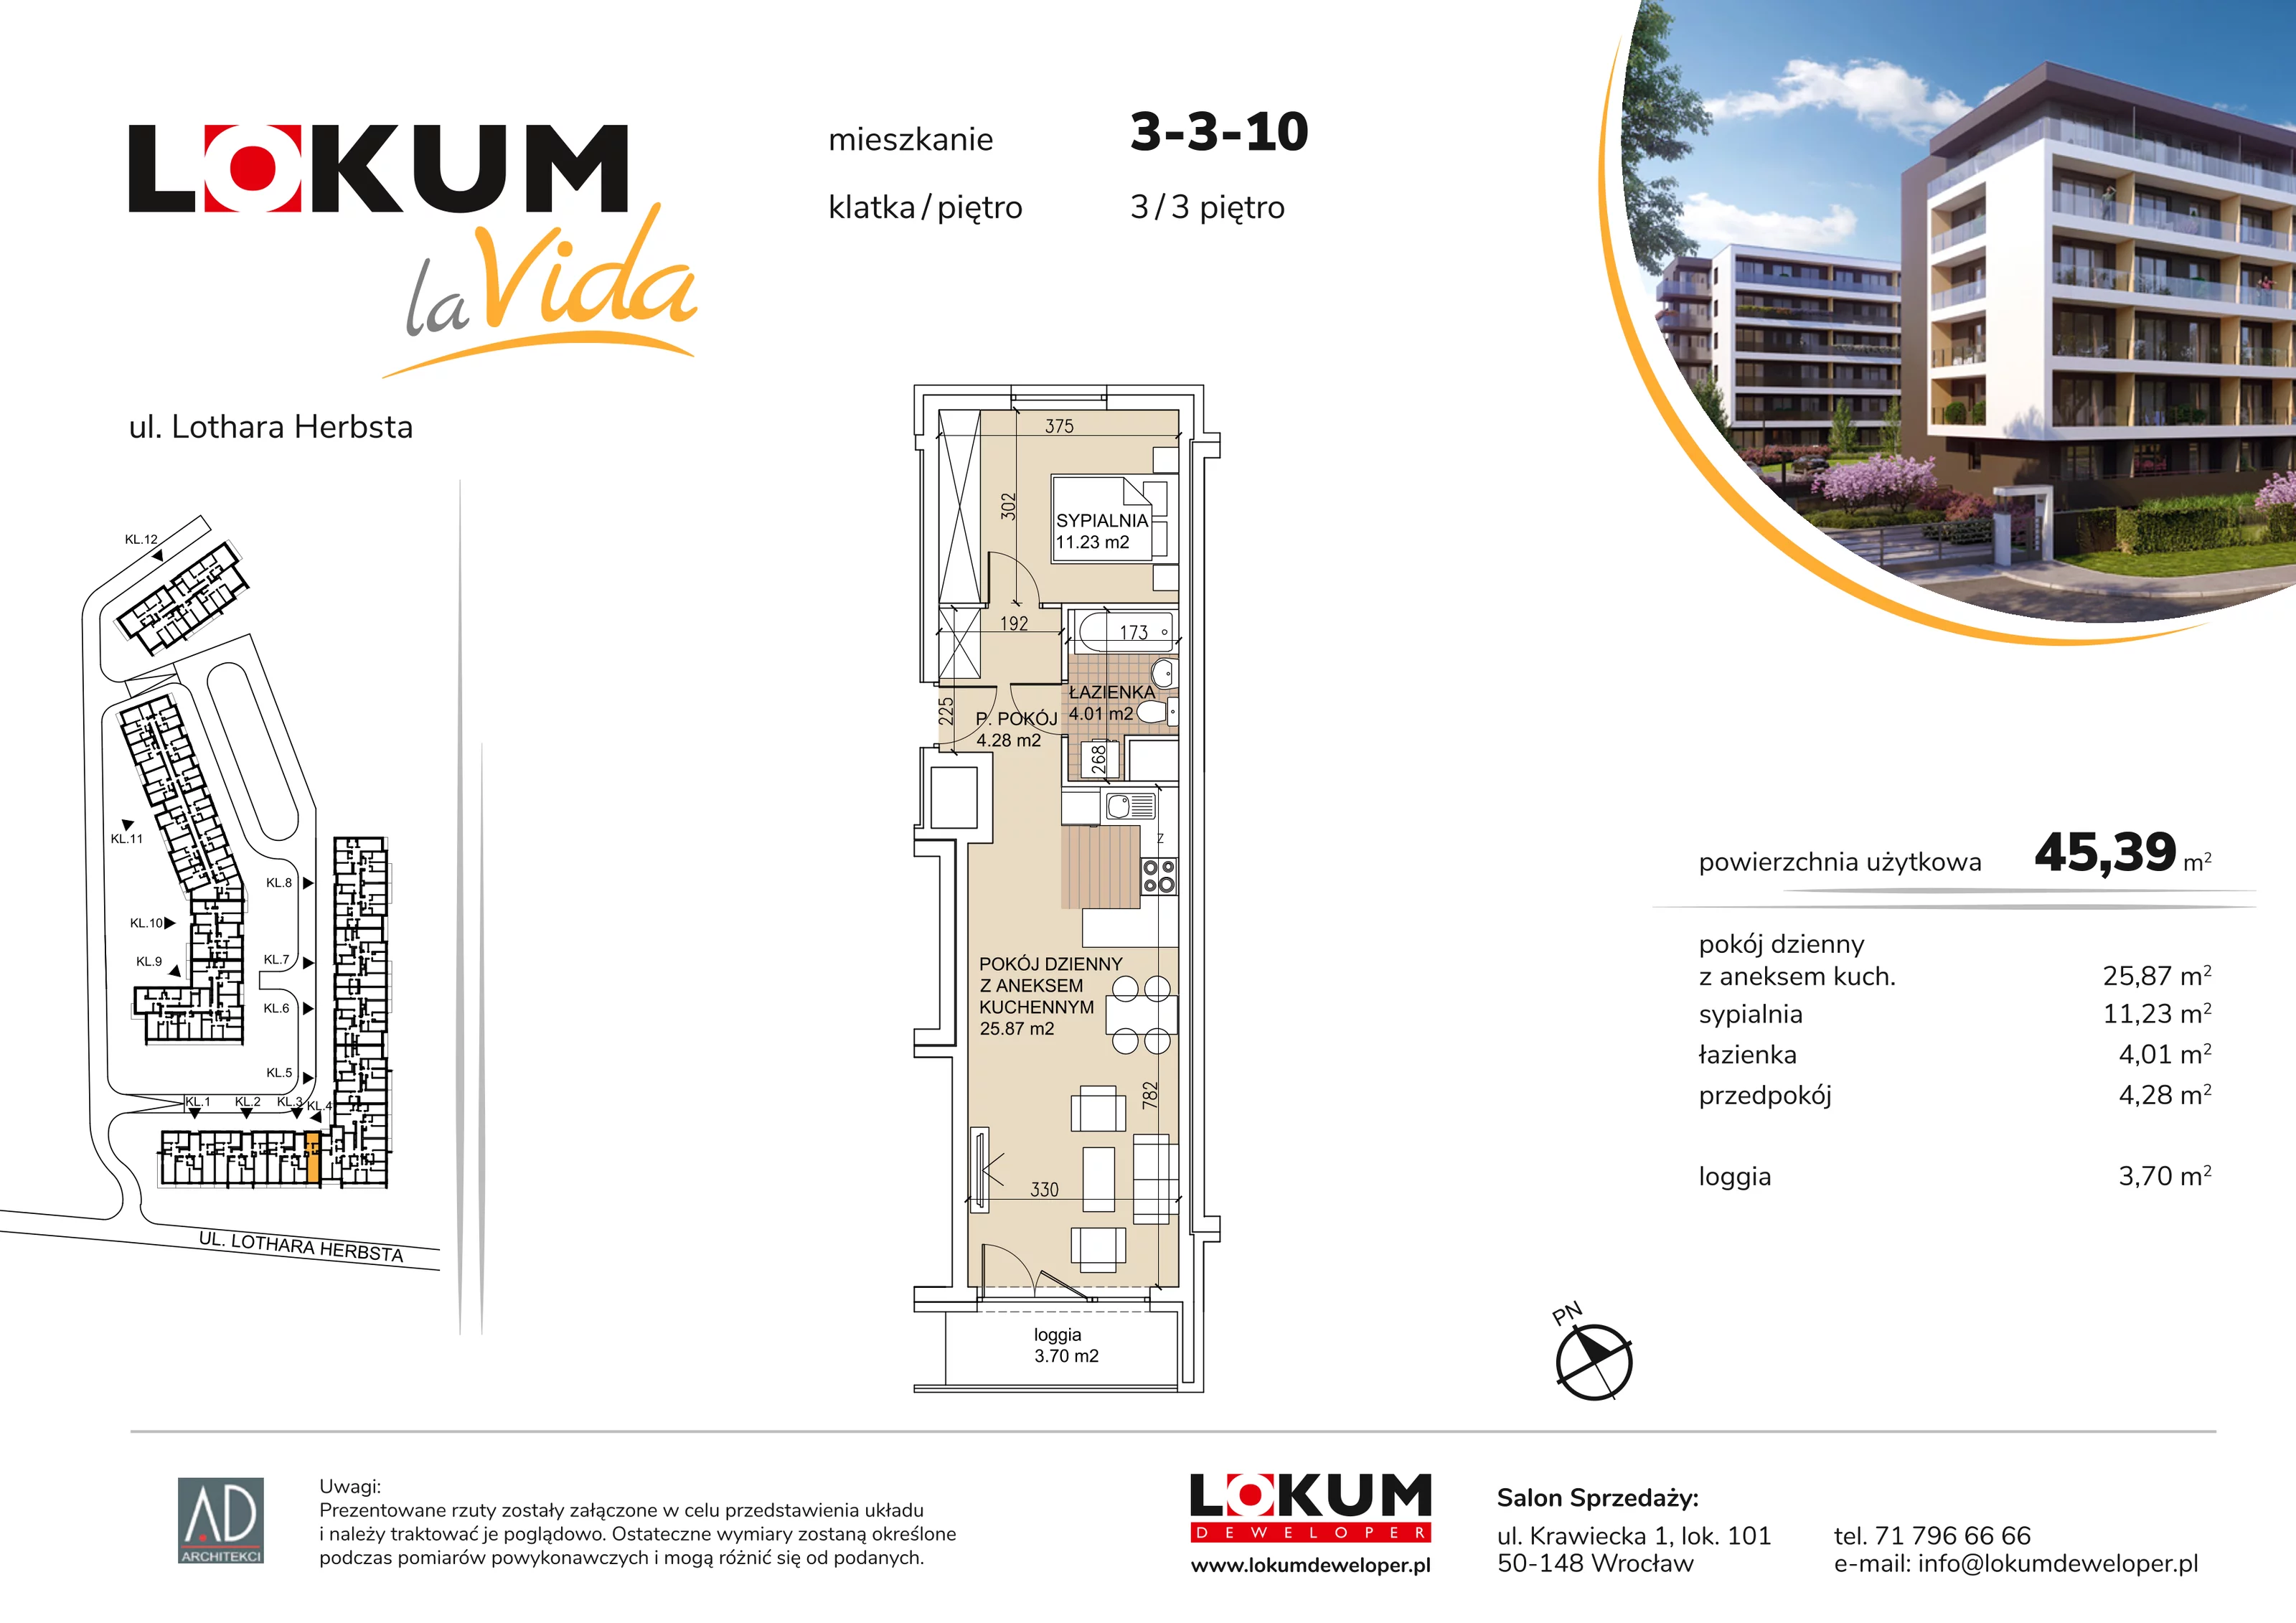 Mieszkanie 45,39 m², piętro 3, oferta nr 3-3-10, Lokum la Vida, Wrocław, Sołtysowice, ul. Lothara Herbsta